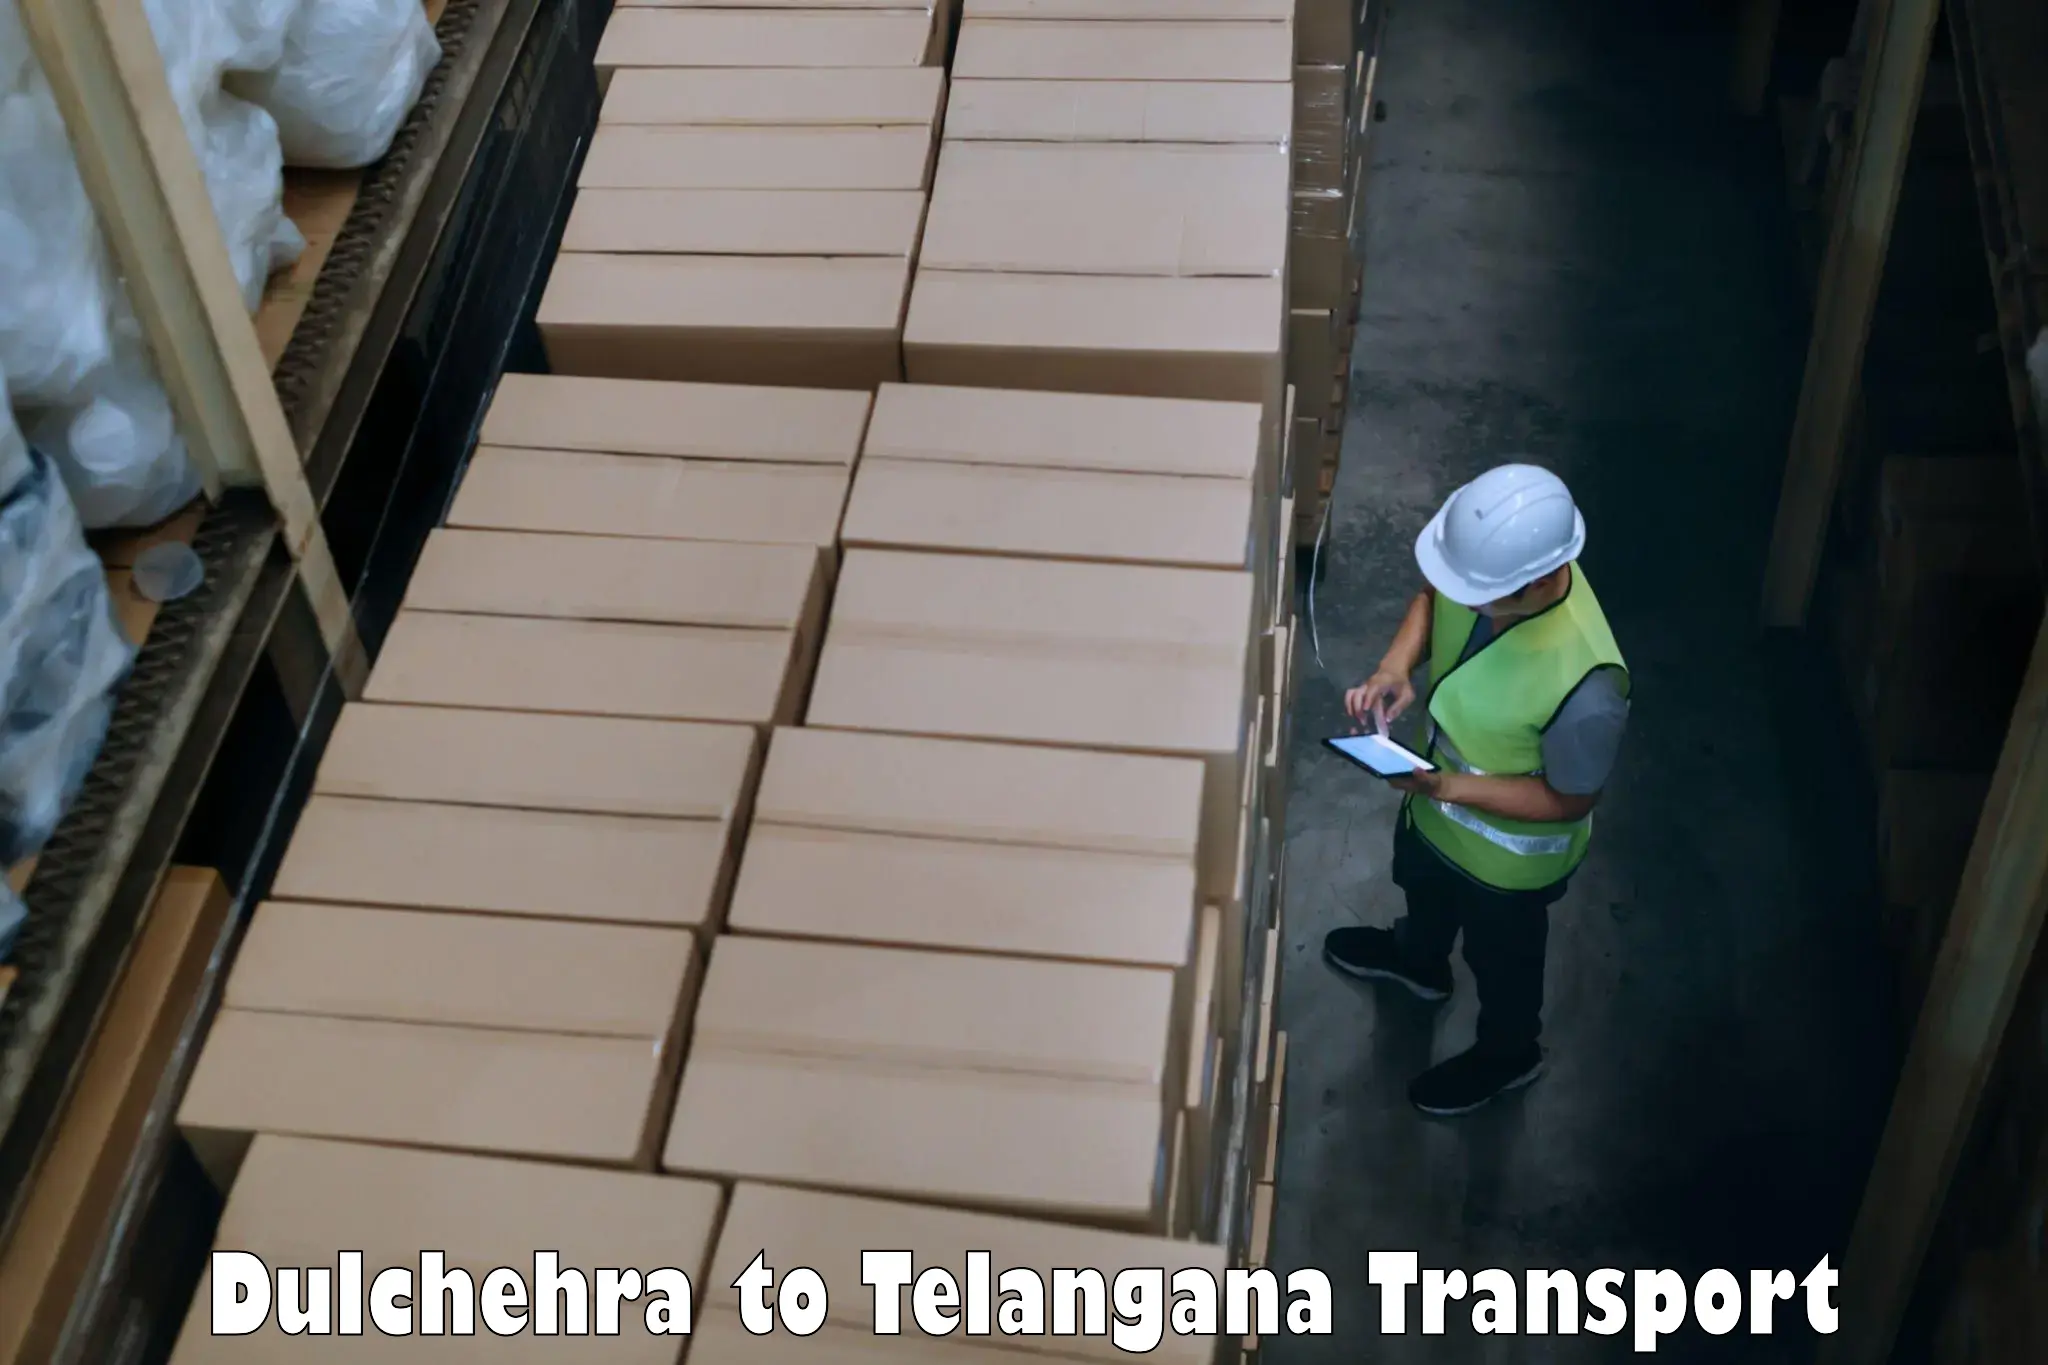 Furniture transport service Dulchehra to Karimnagar